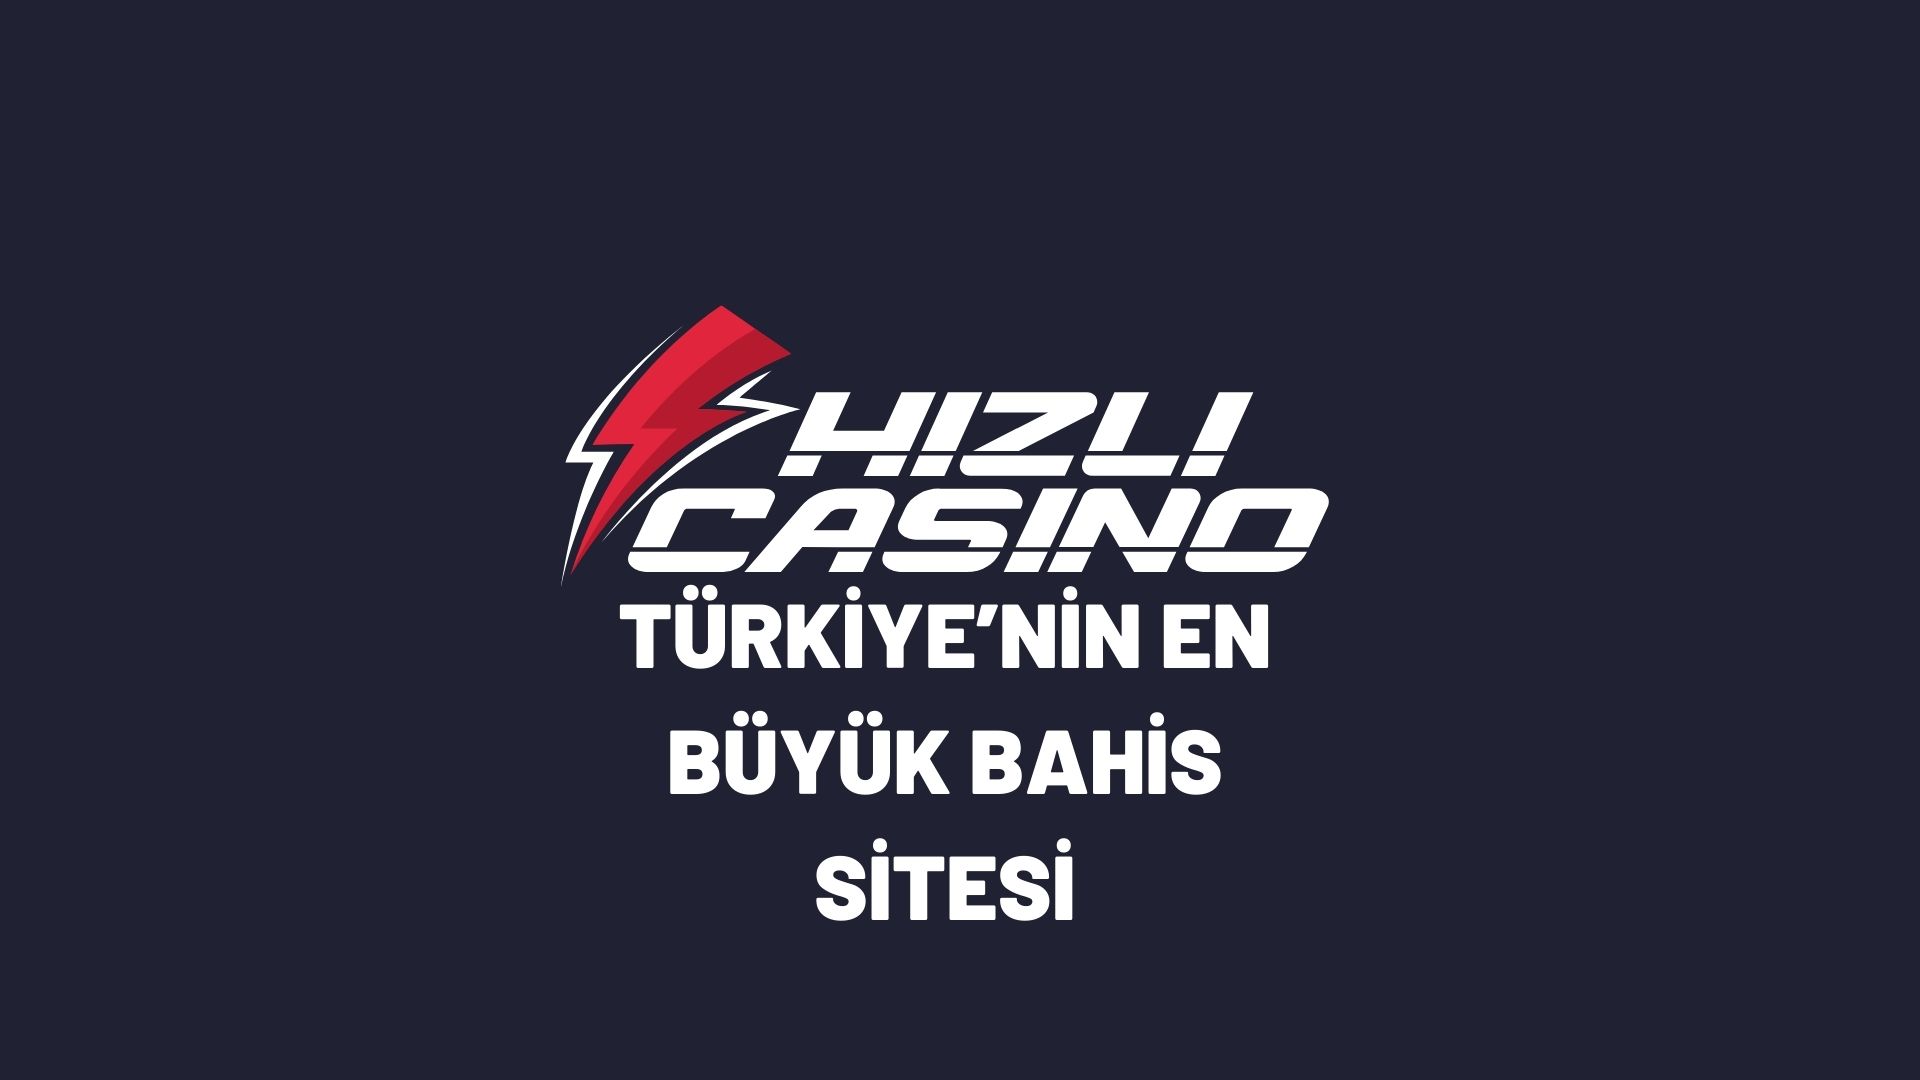 hizli-casino-turkiyenin-en-buyuk-bahis-sitesi